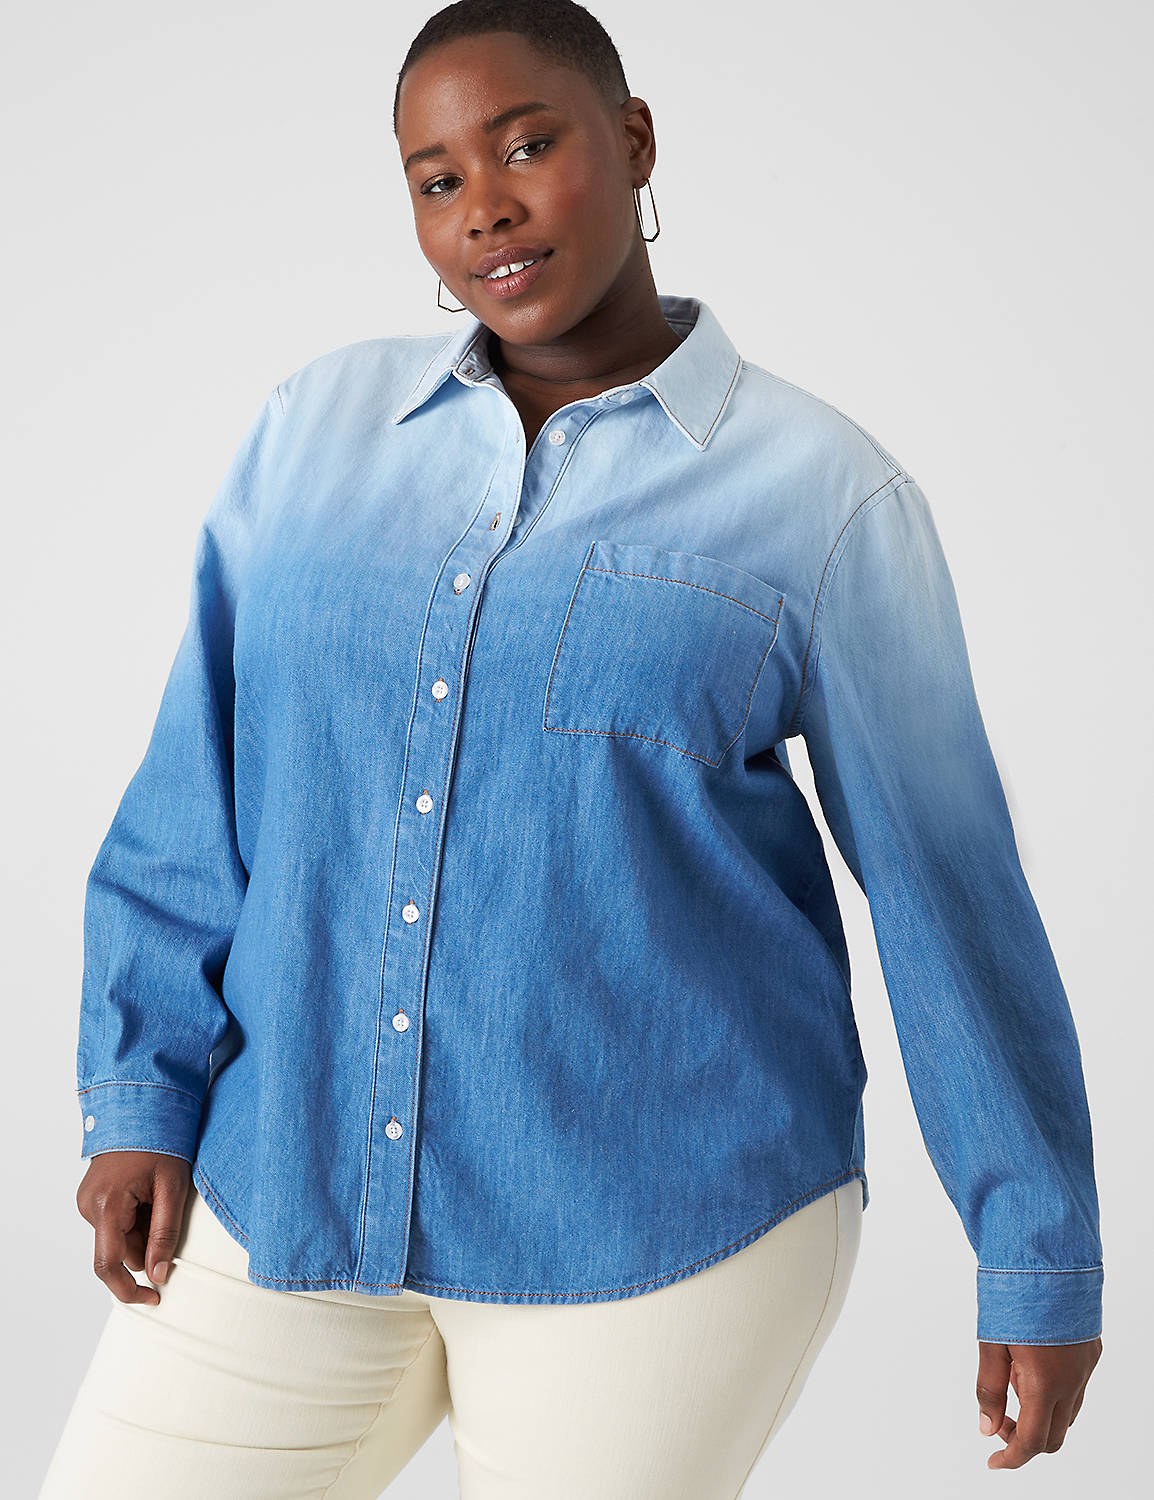 lane bryant long-sleeve button-down denim shirt 14/16 medium denim